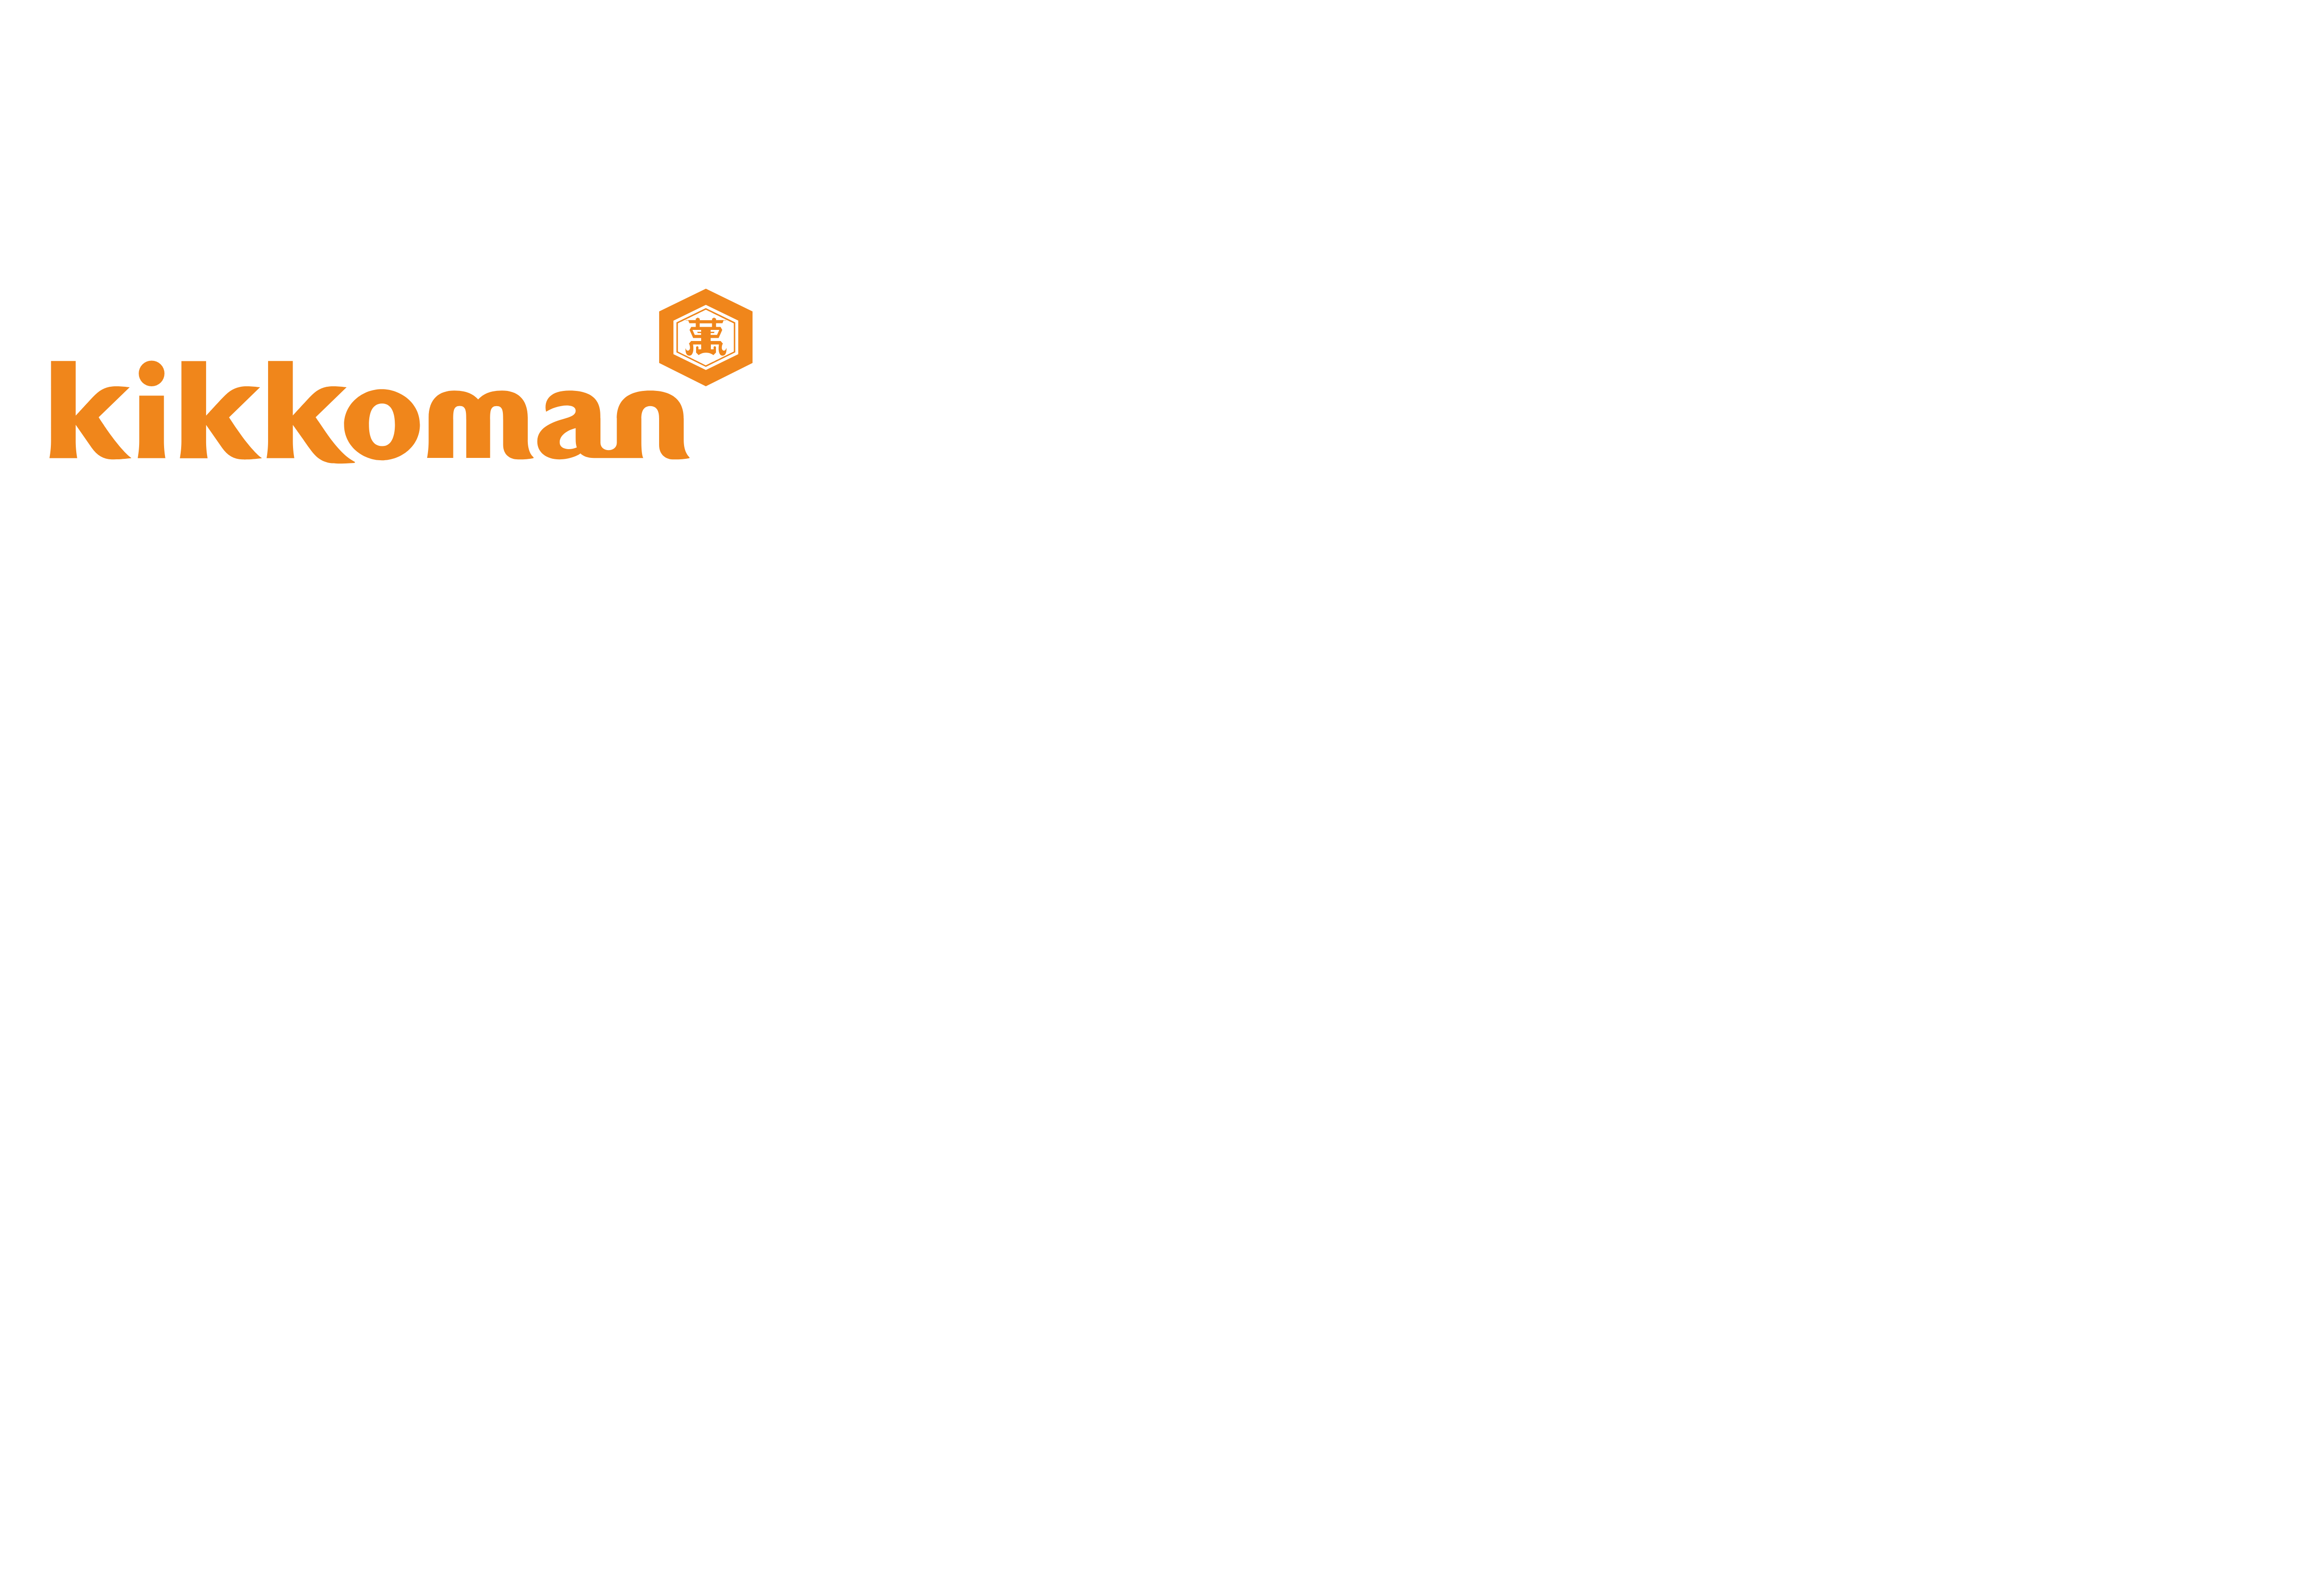 Kikkoman Logo - Kikkoman – Logos Download